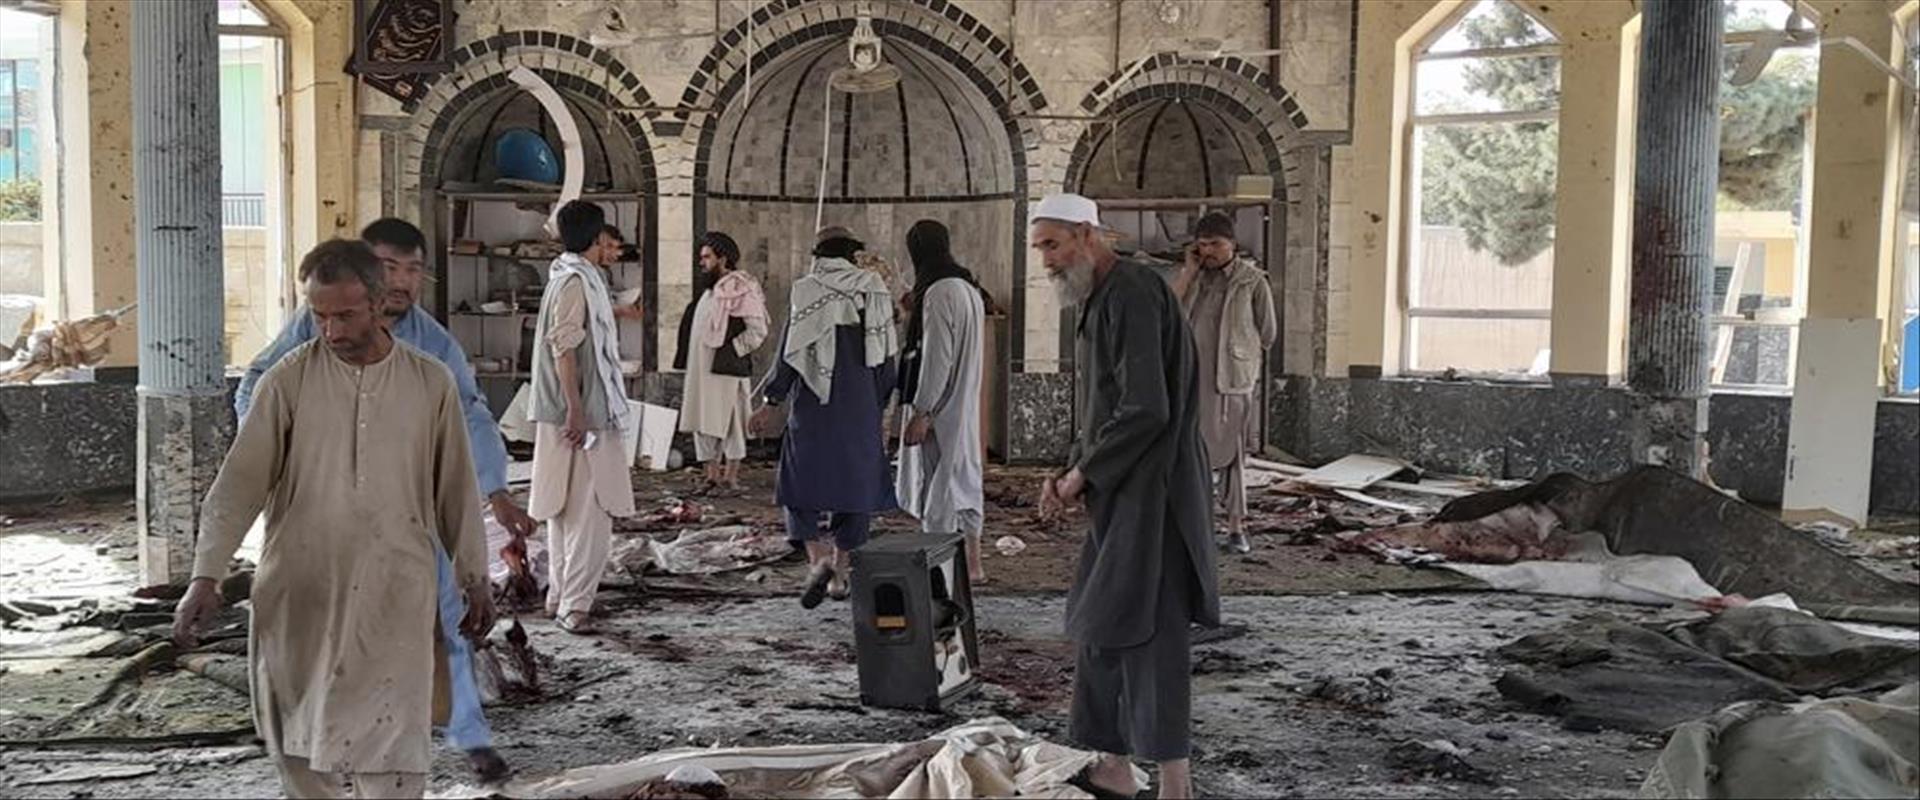 פיצוץ מסגד באפגניסטאן בשבוע שעבר